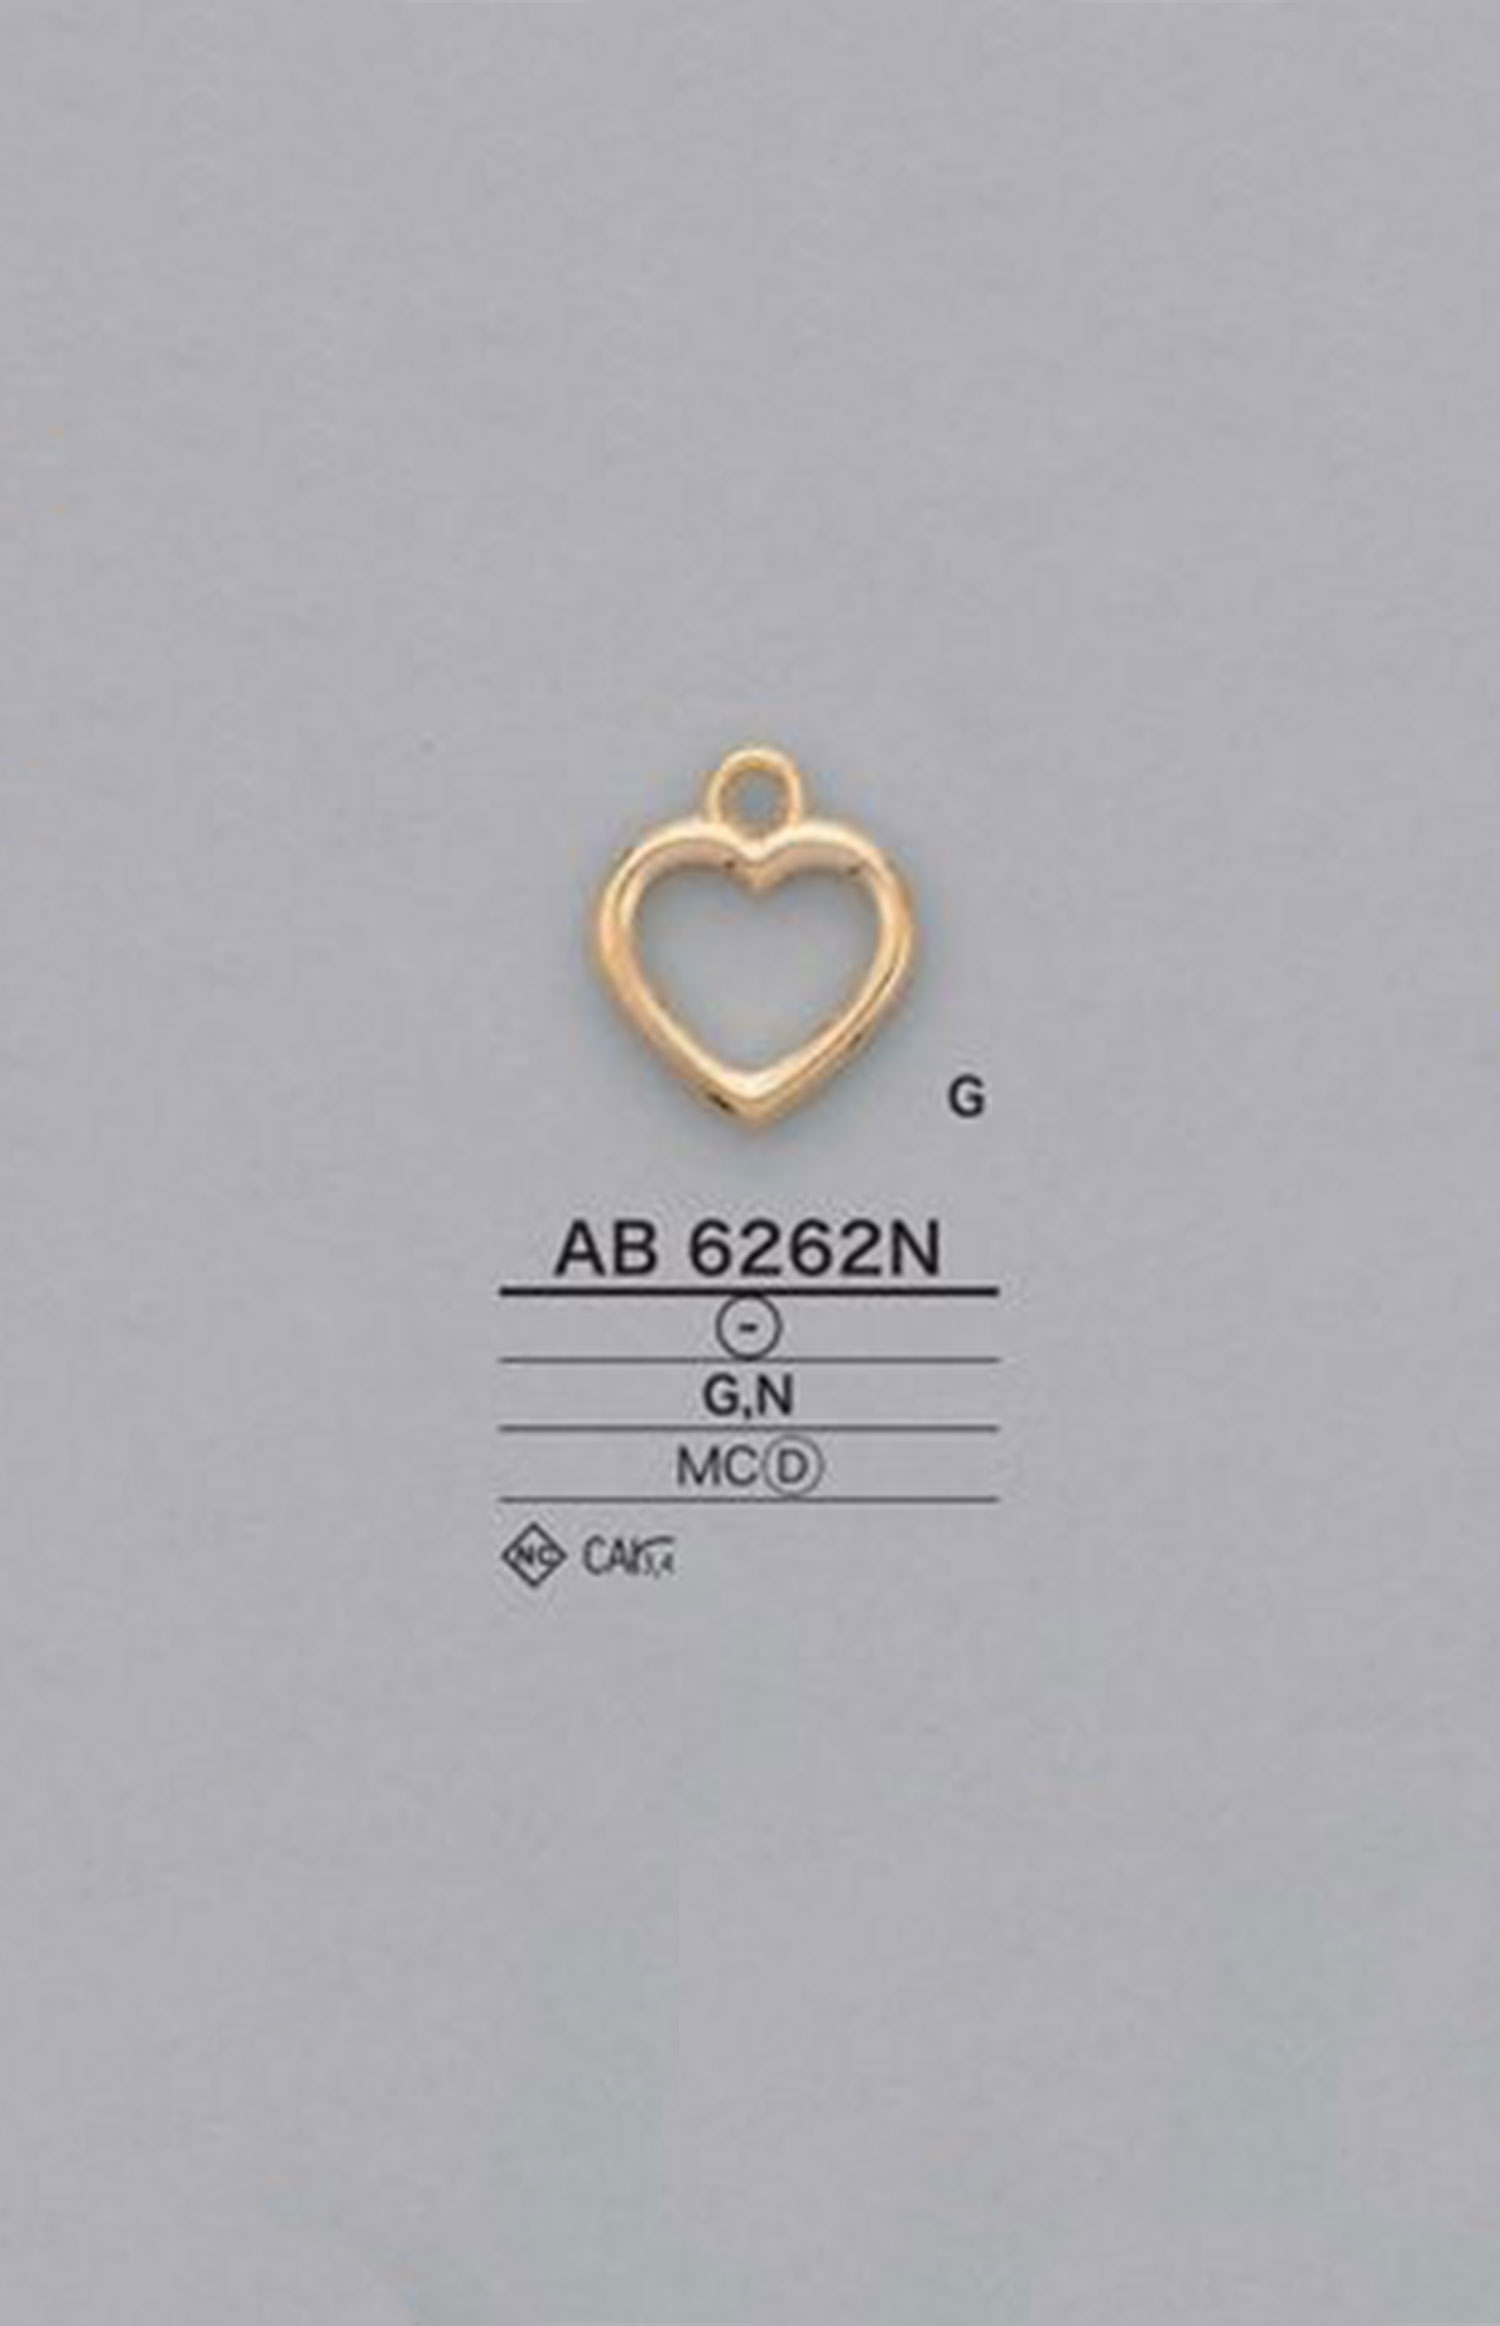 AB6262N Ponto De Zíper Em Forma De Coração (Guia De Puxar) IRIS